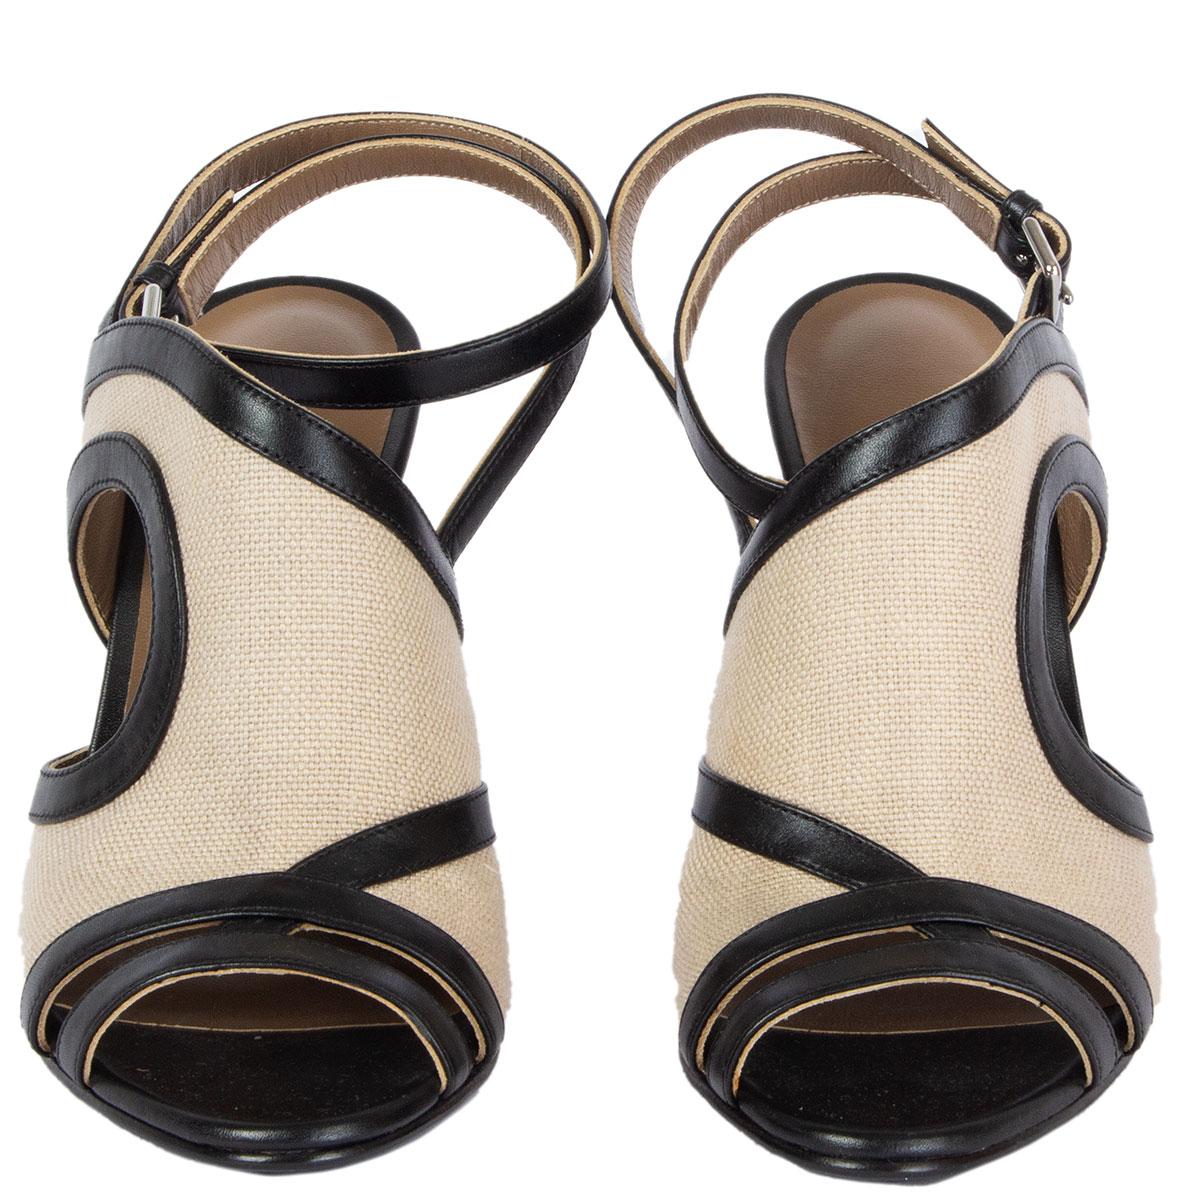 100% authentiques sandales Hermes Rafaella en toile taupe avec talon et garniture en cuir noir. État neuf. Livré avec un sac à poussière. 

Mesures
Taille imprimée	38
Taille des chaussures	38
Semelle intérieure	24.5cm (9.6in)
Largeur	7.5cm